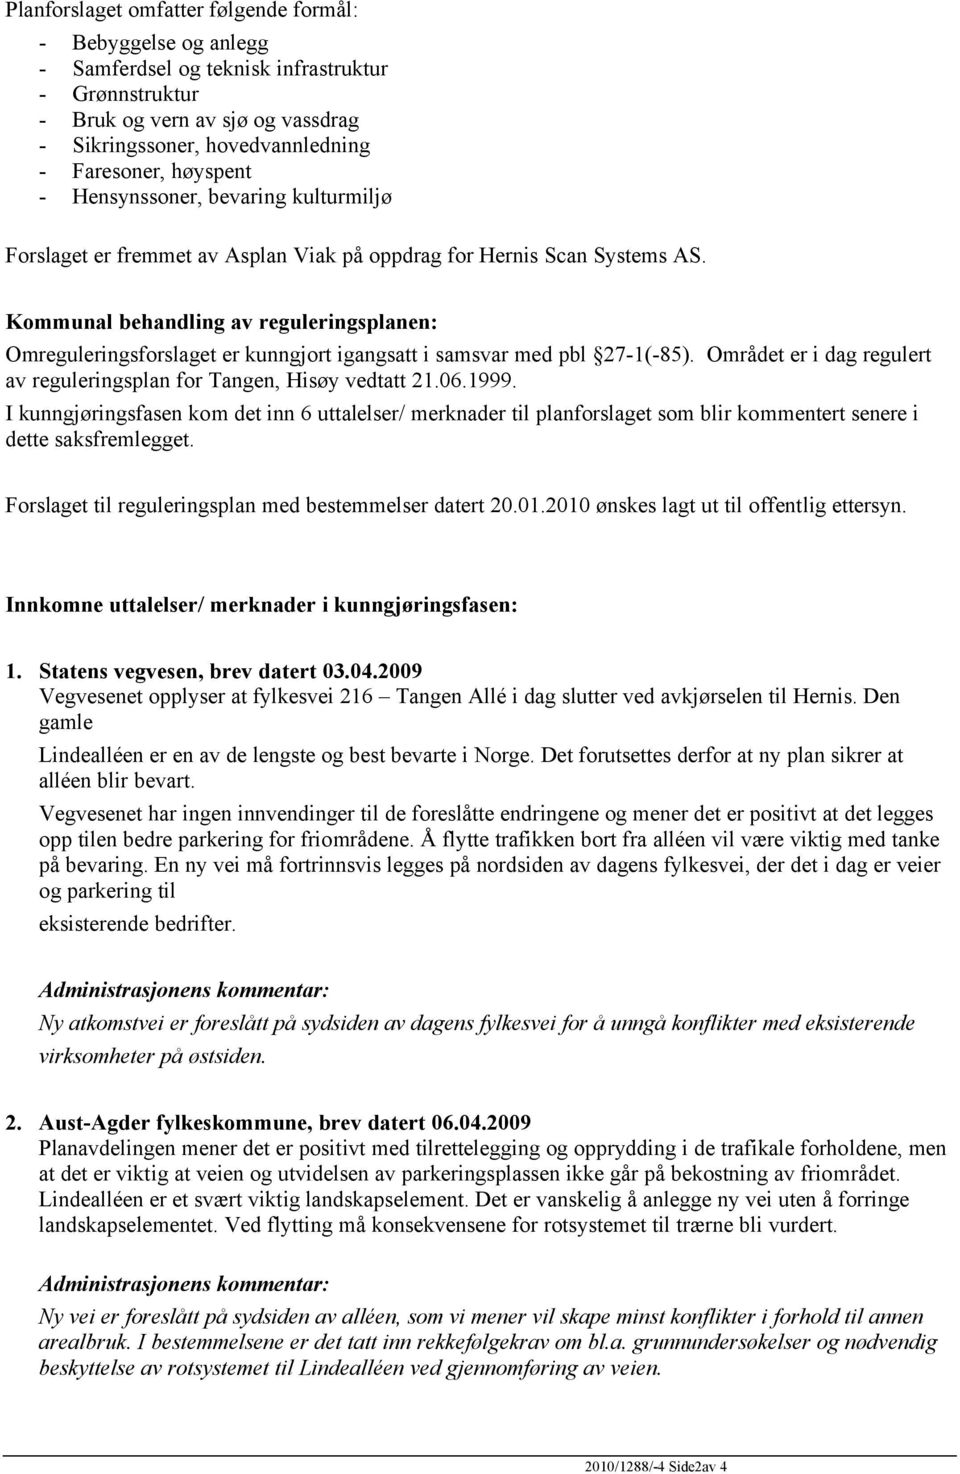 Kommunal behandling av reguleringsplanen: Omreguleringsforslaget er kunngjort igangsatt i samsvar med pbl 27-1(-85). Området er i dag regulert av reguleringsplan for Tangen, Hisøy vedtatt 21.06.1999.